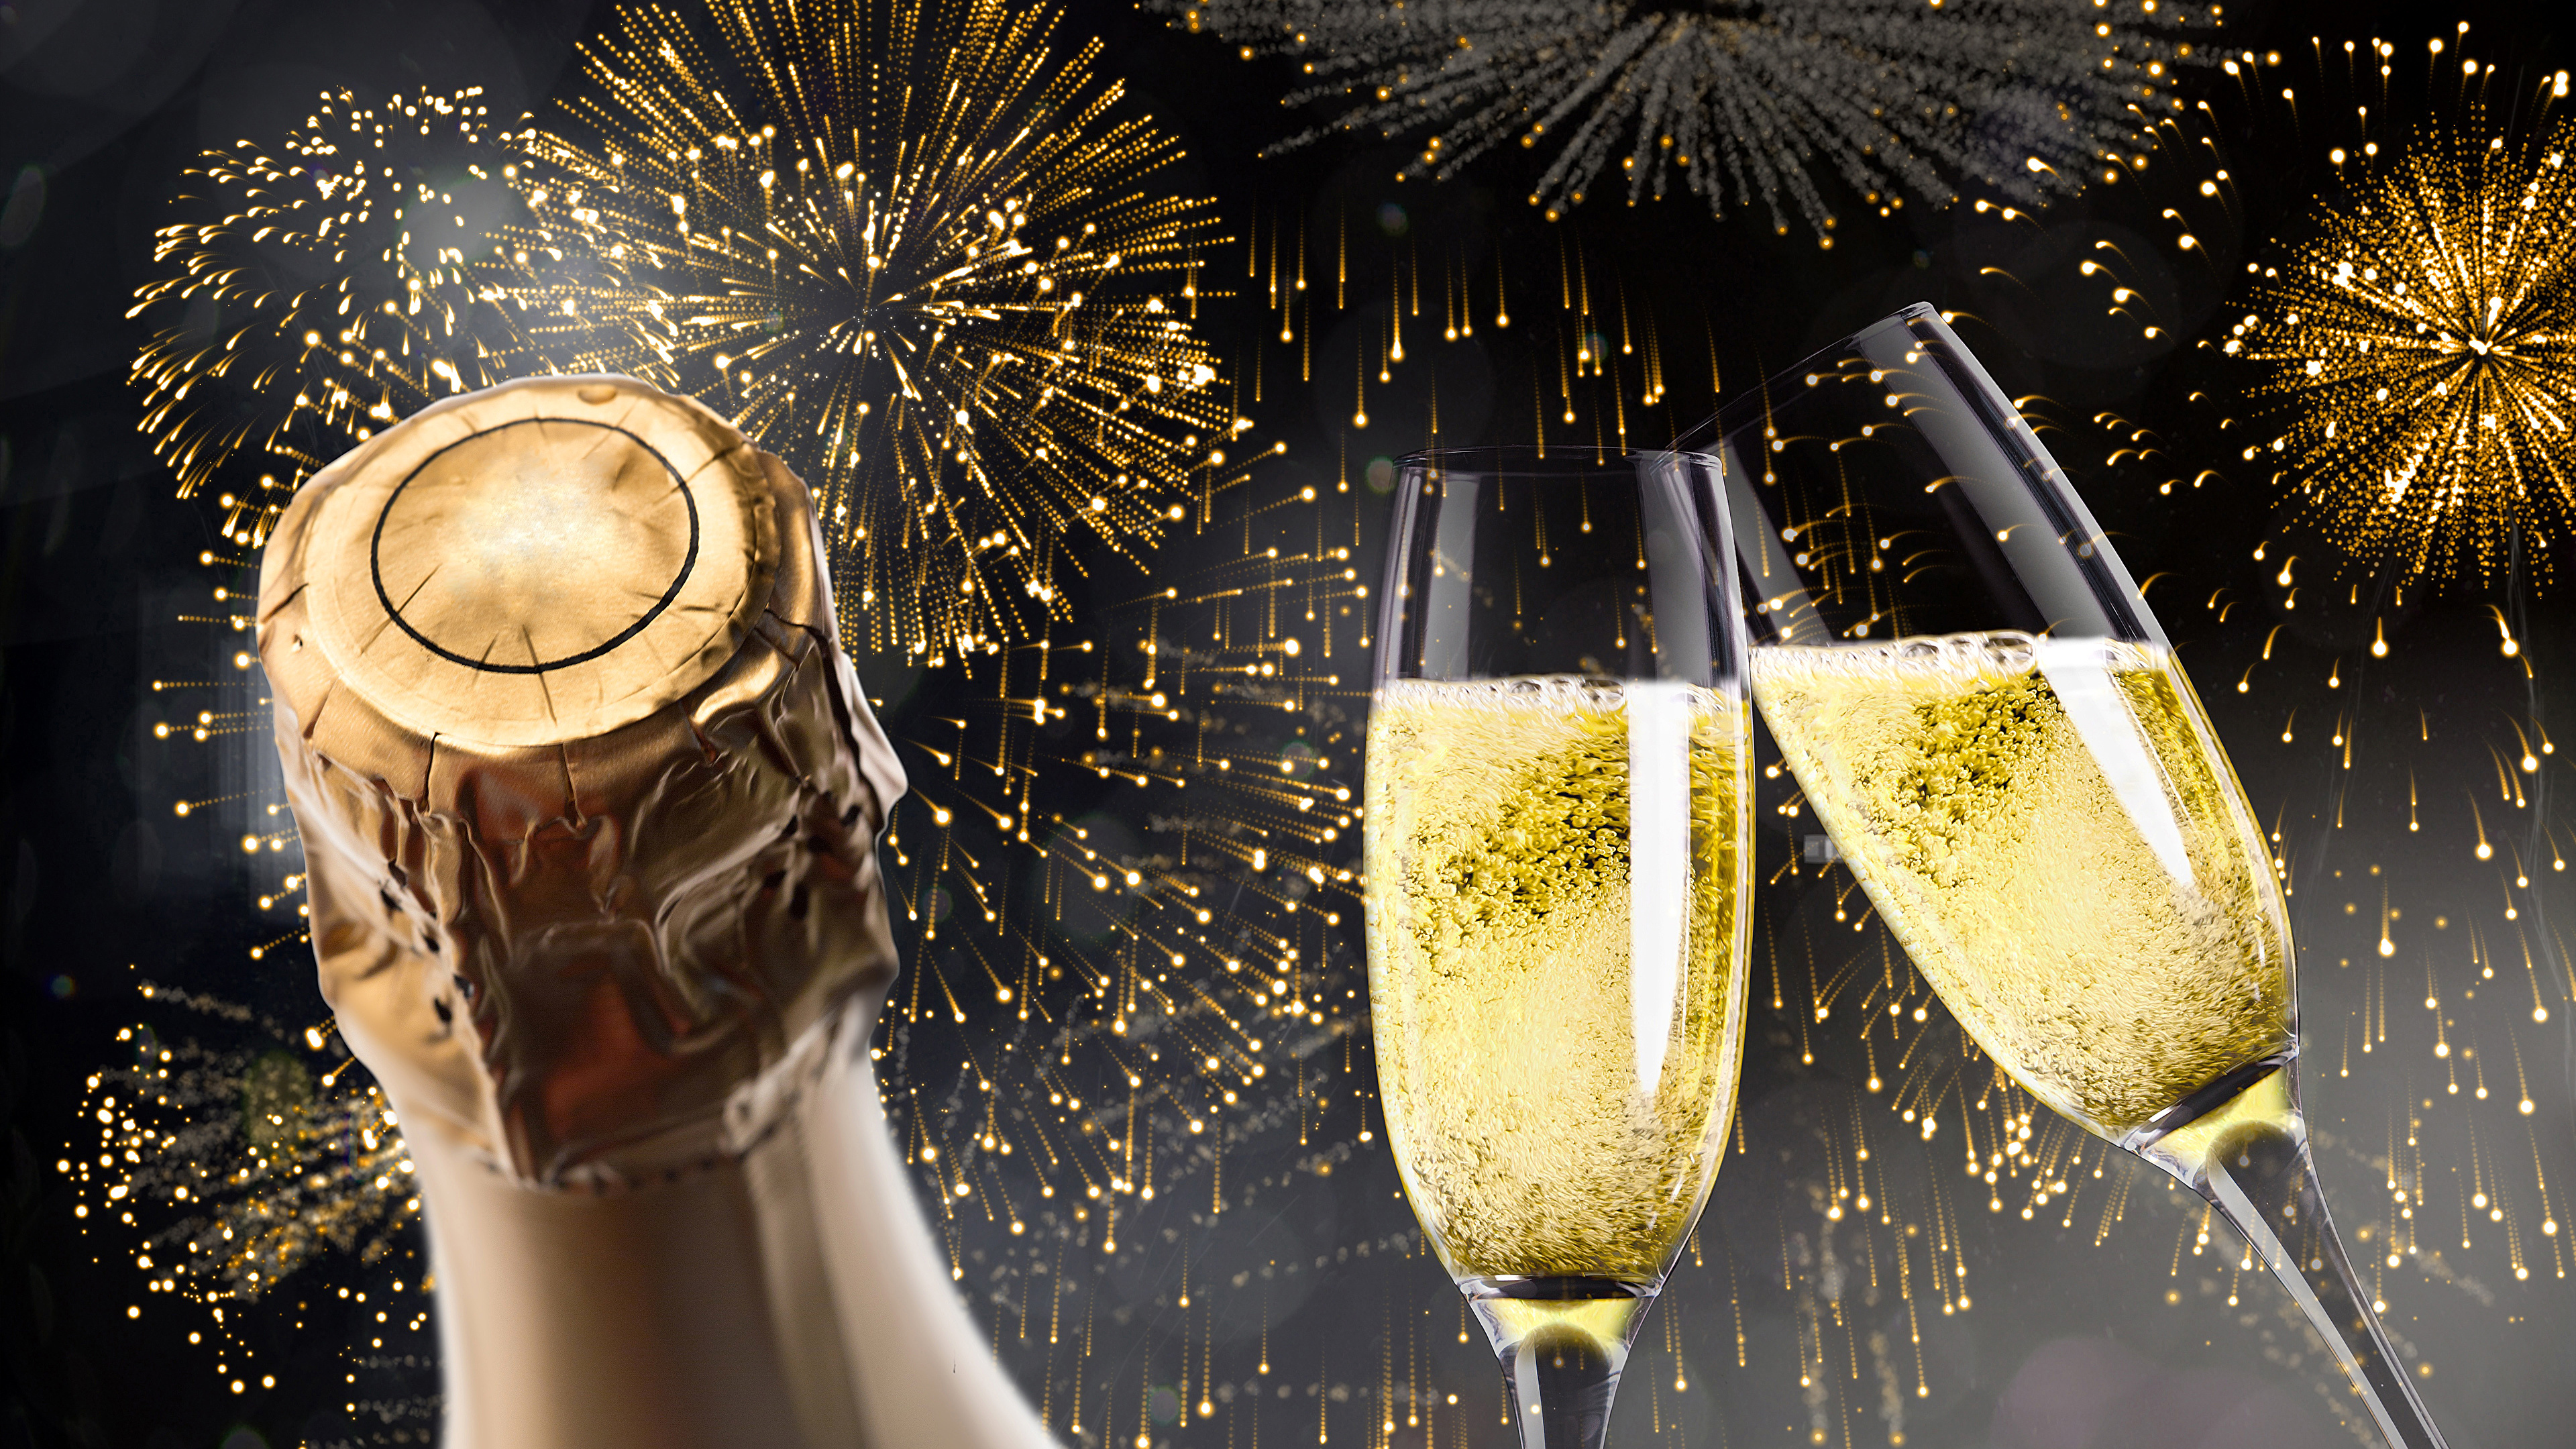 新年前夕, 香槟, 新的一年, 缔约方, 新年当天 壁纸 3840x2160 允许